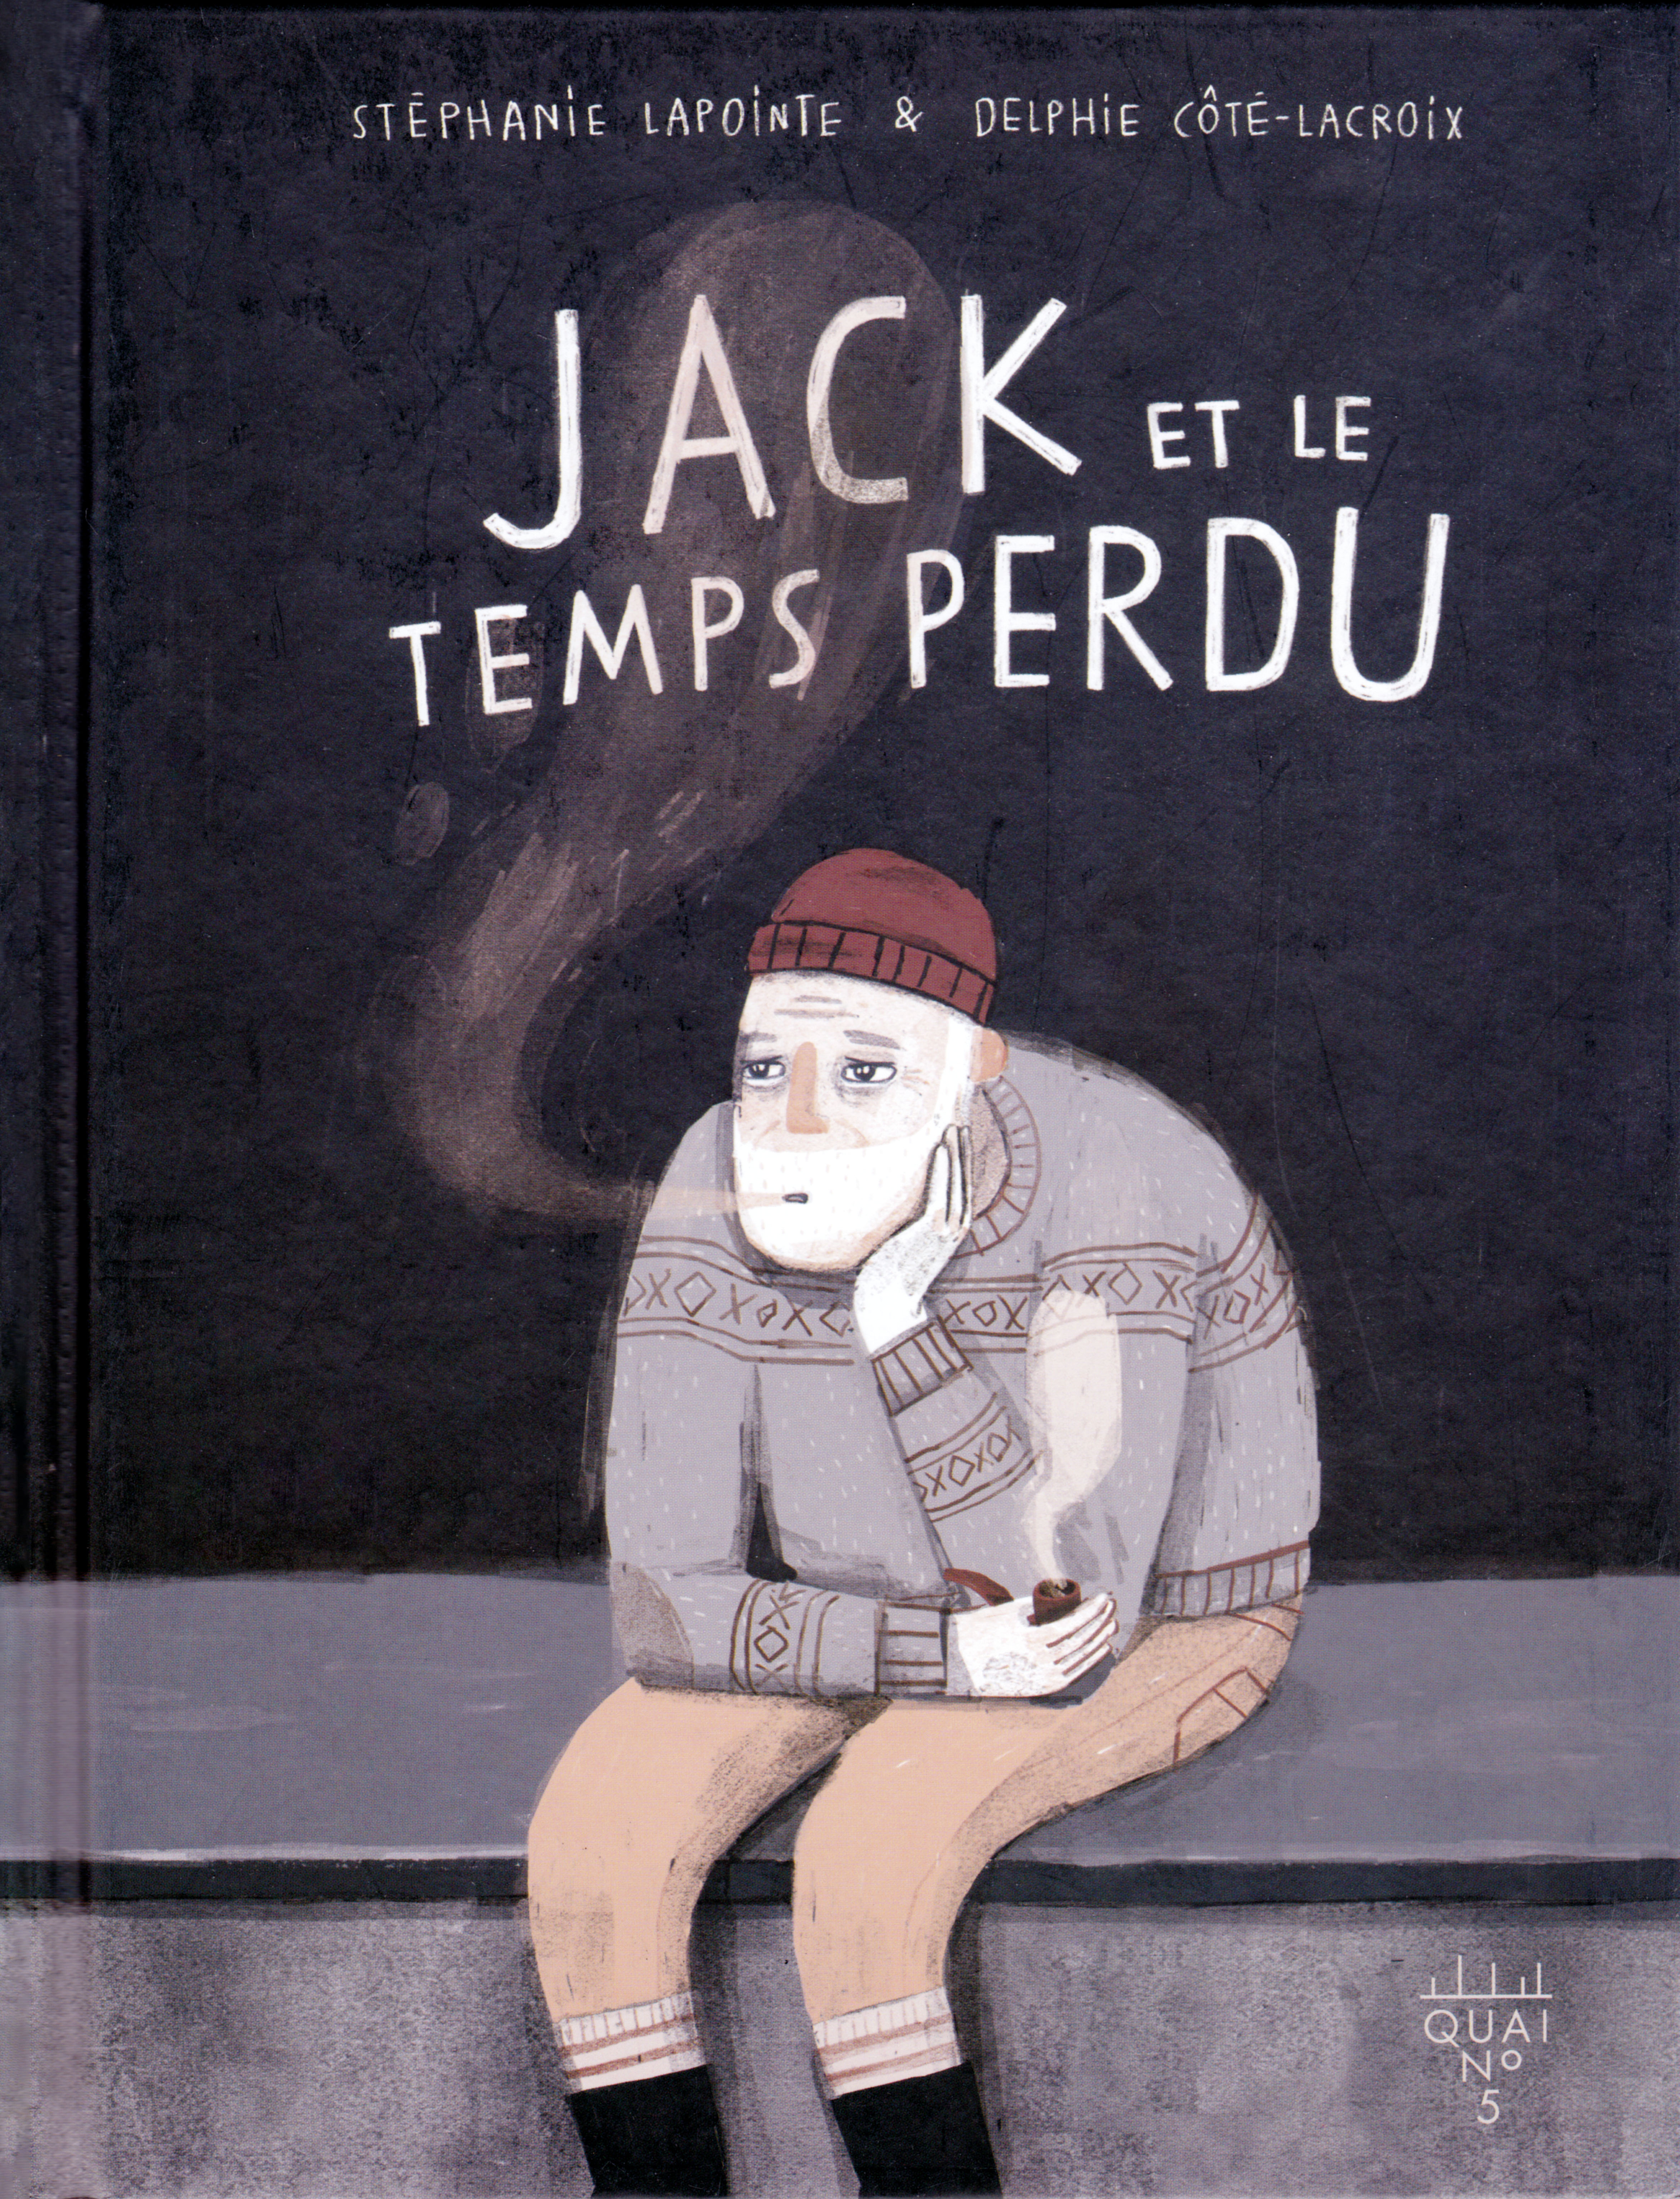 Couverture du livre «Jack et le temps perdu» de Stéphanie Lapointe et Delphie Côté-Lacroix.